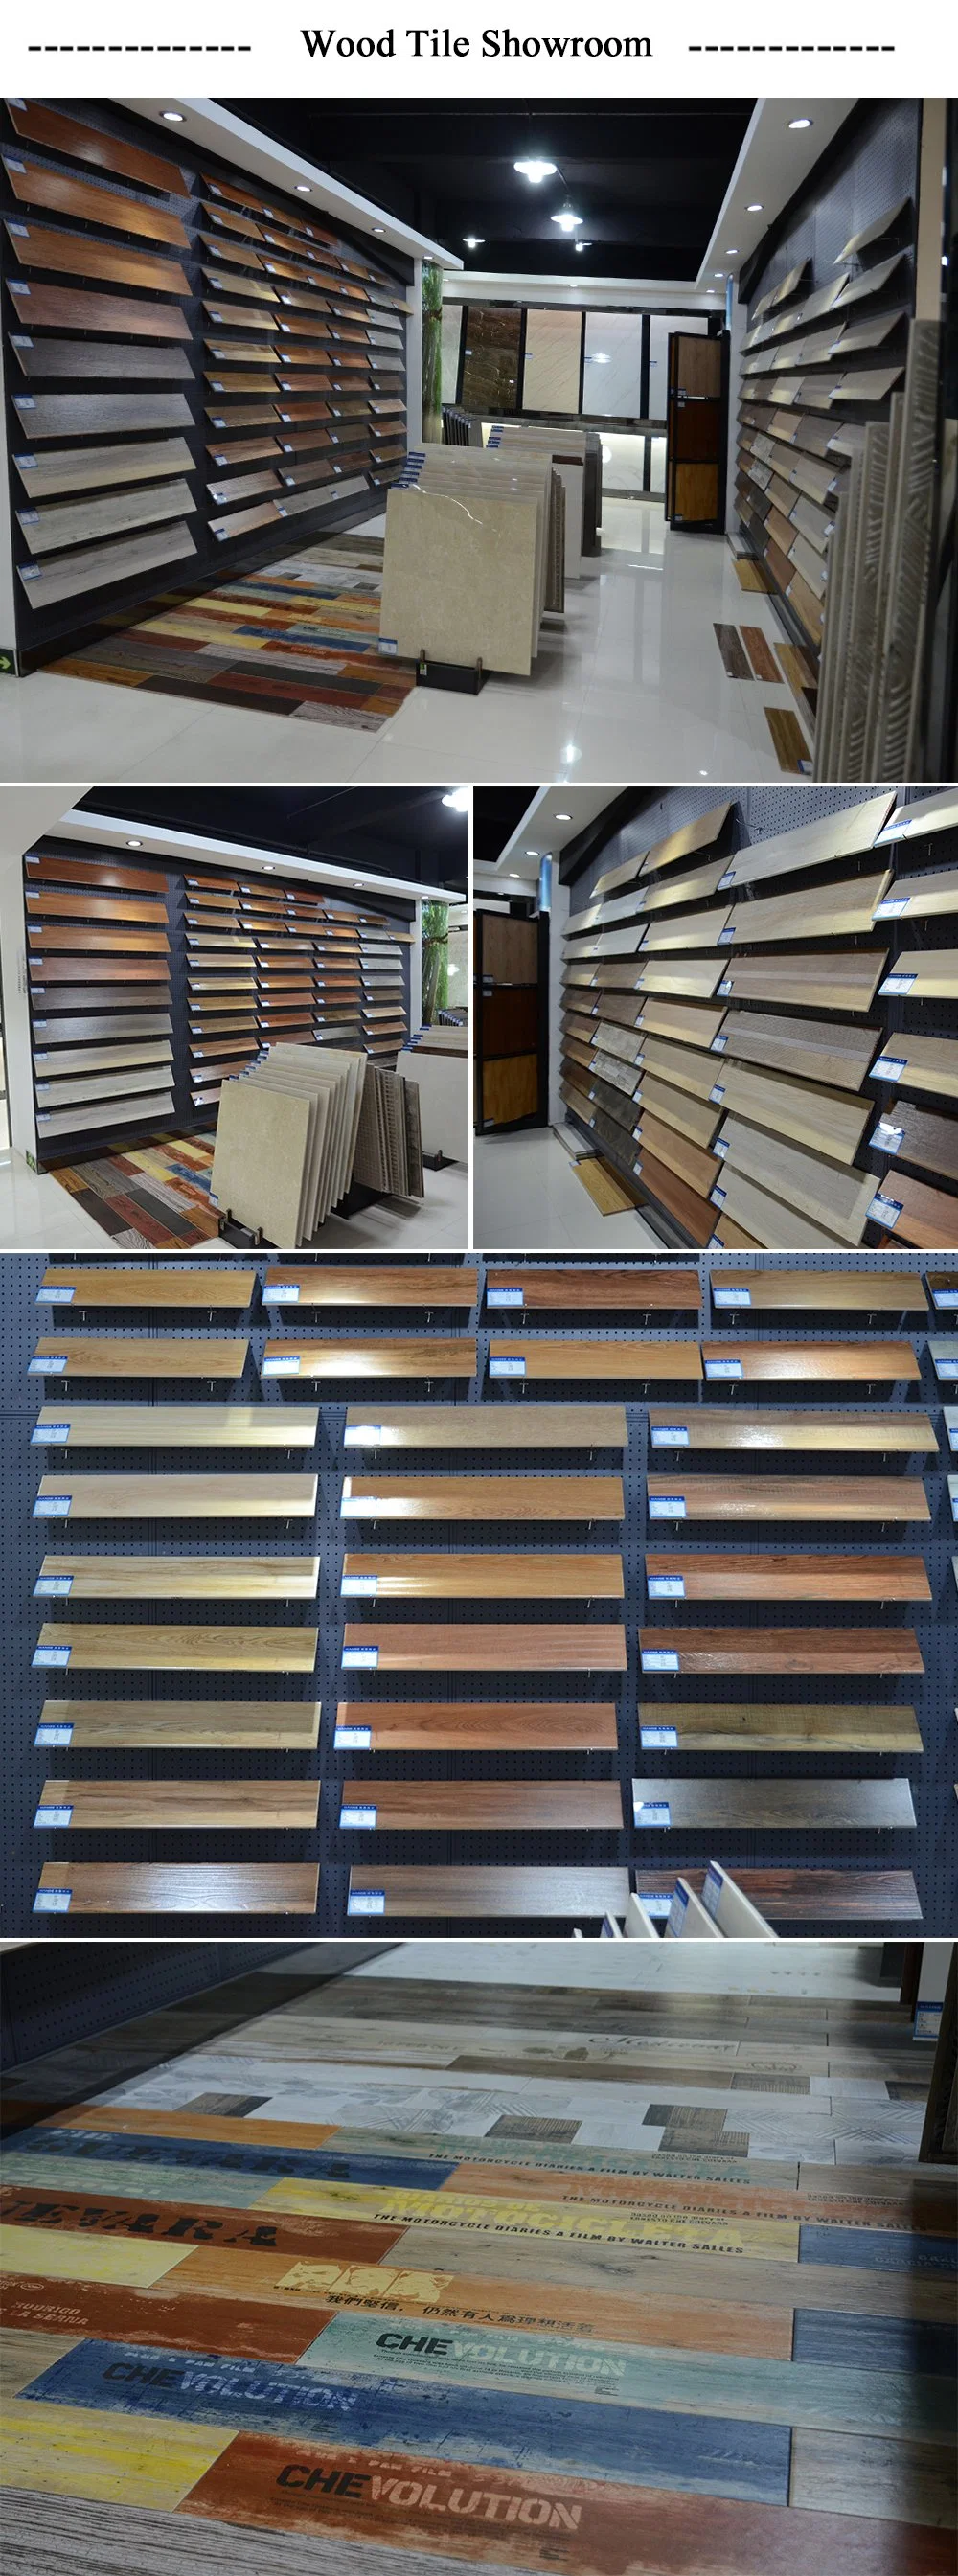 Rectified Ceramics Floor Wood Look Vs Hardwood Wall Tile Wooden